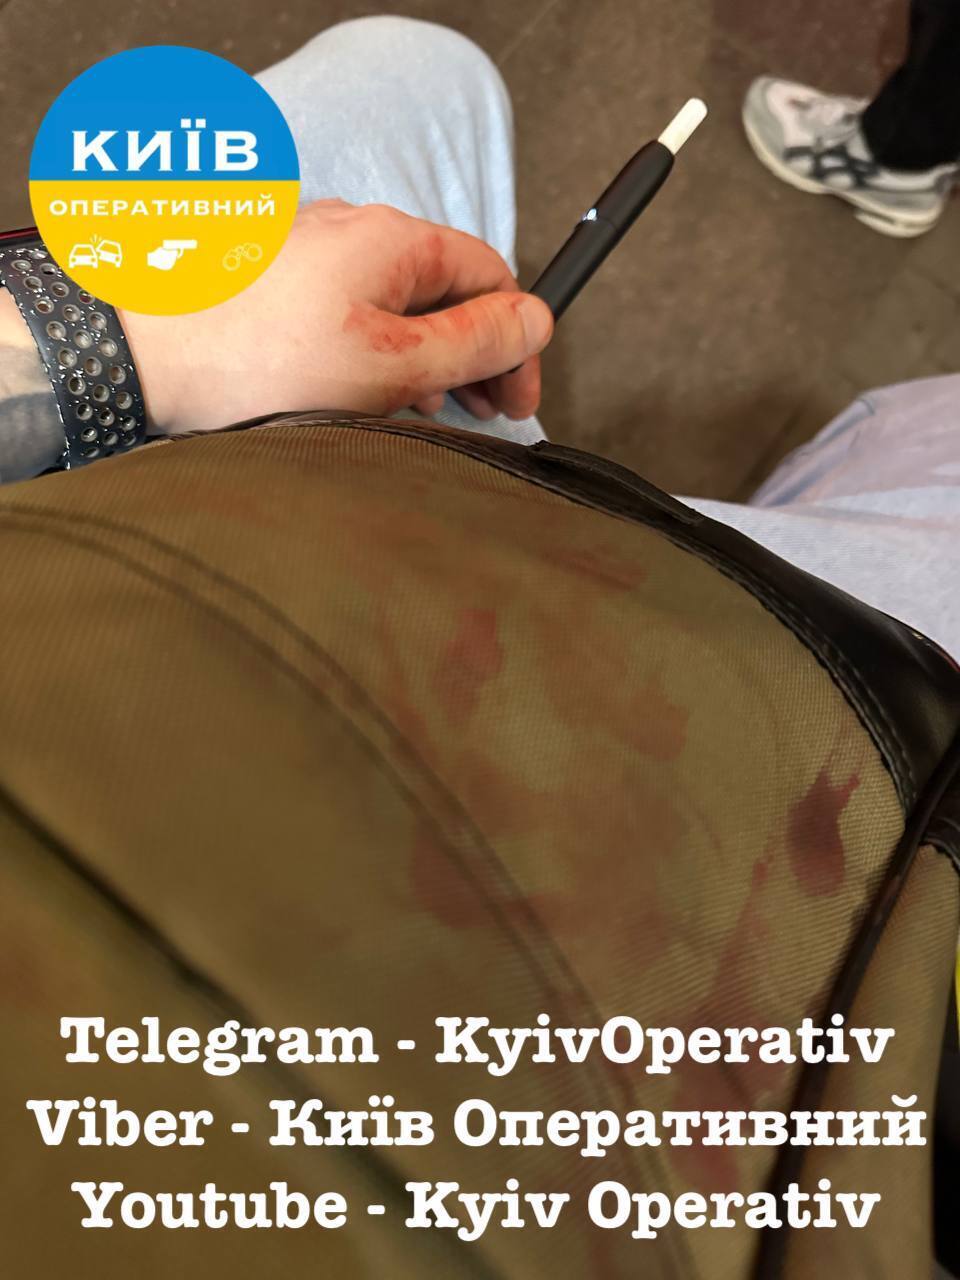 В Киеве мужчина разбил стекло фуникулера и порезал горло подростку: все детали, фото и видео 18+